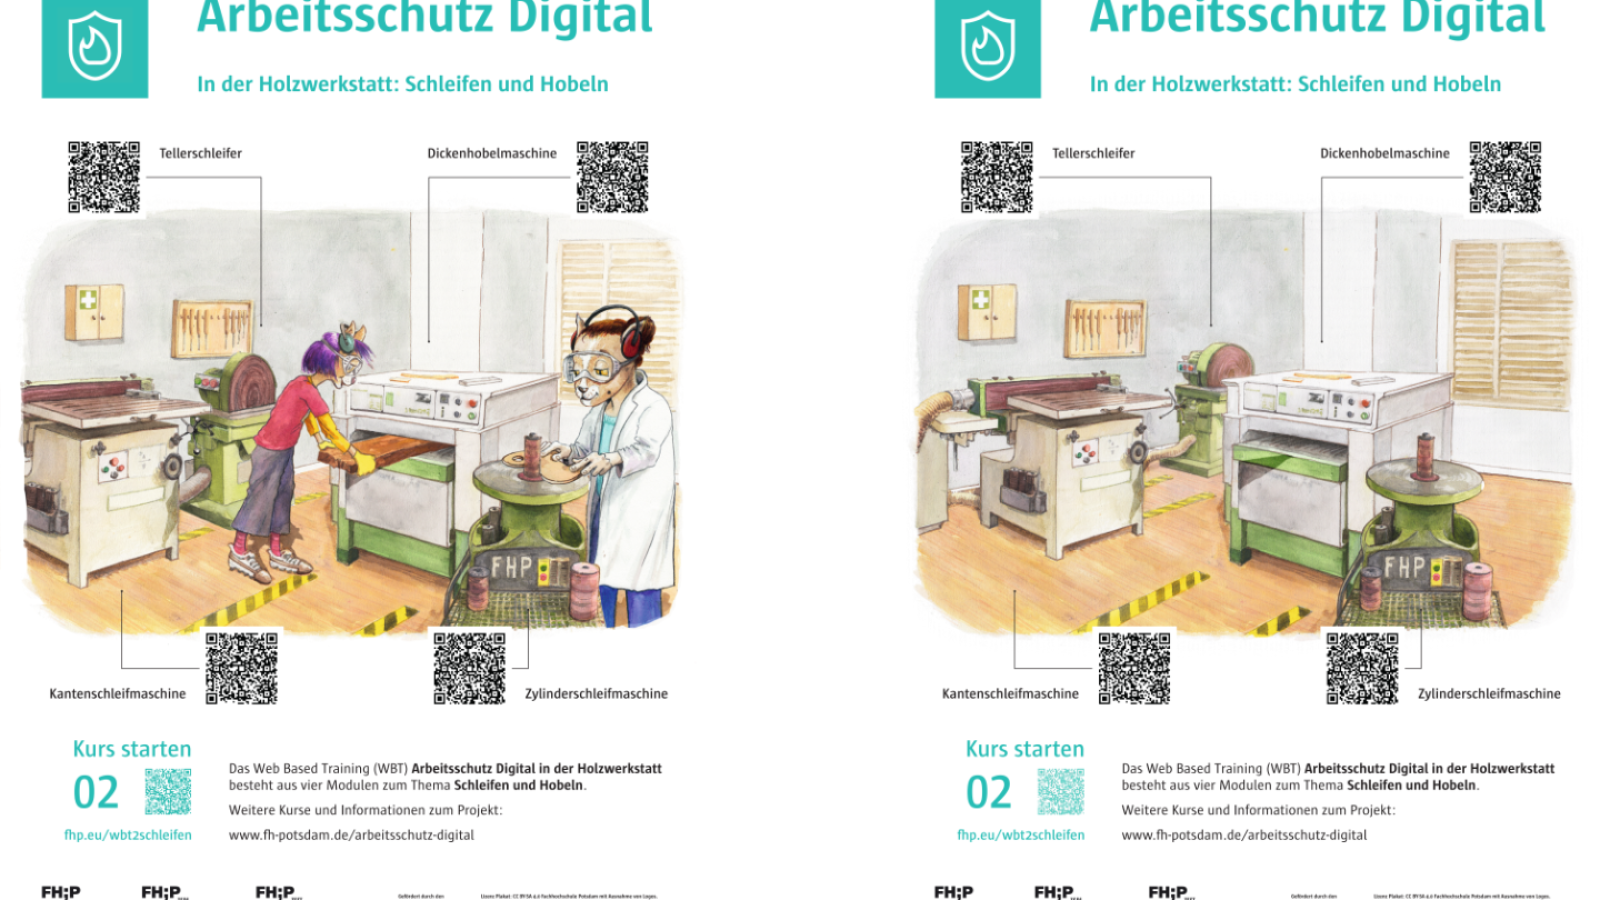 Gegenüberstellung der 2 interaktiven Plakatversionen zu den Arbeitschutzthemen Schleifen und Hobeln.